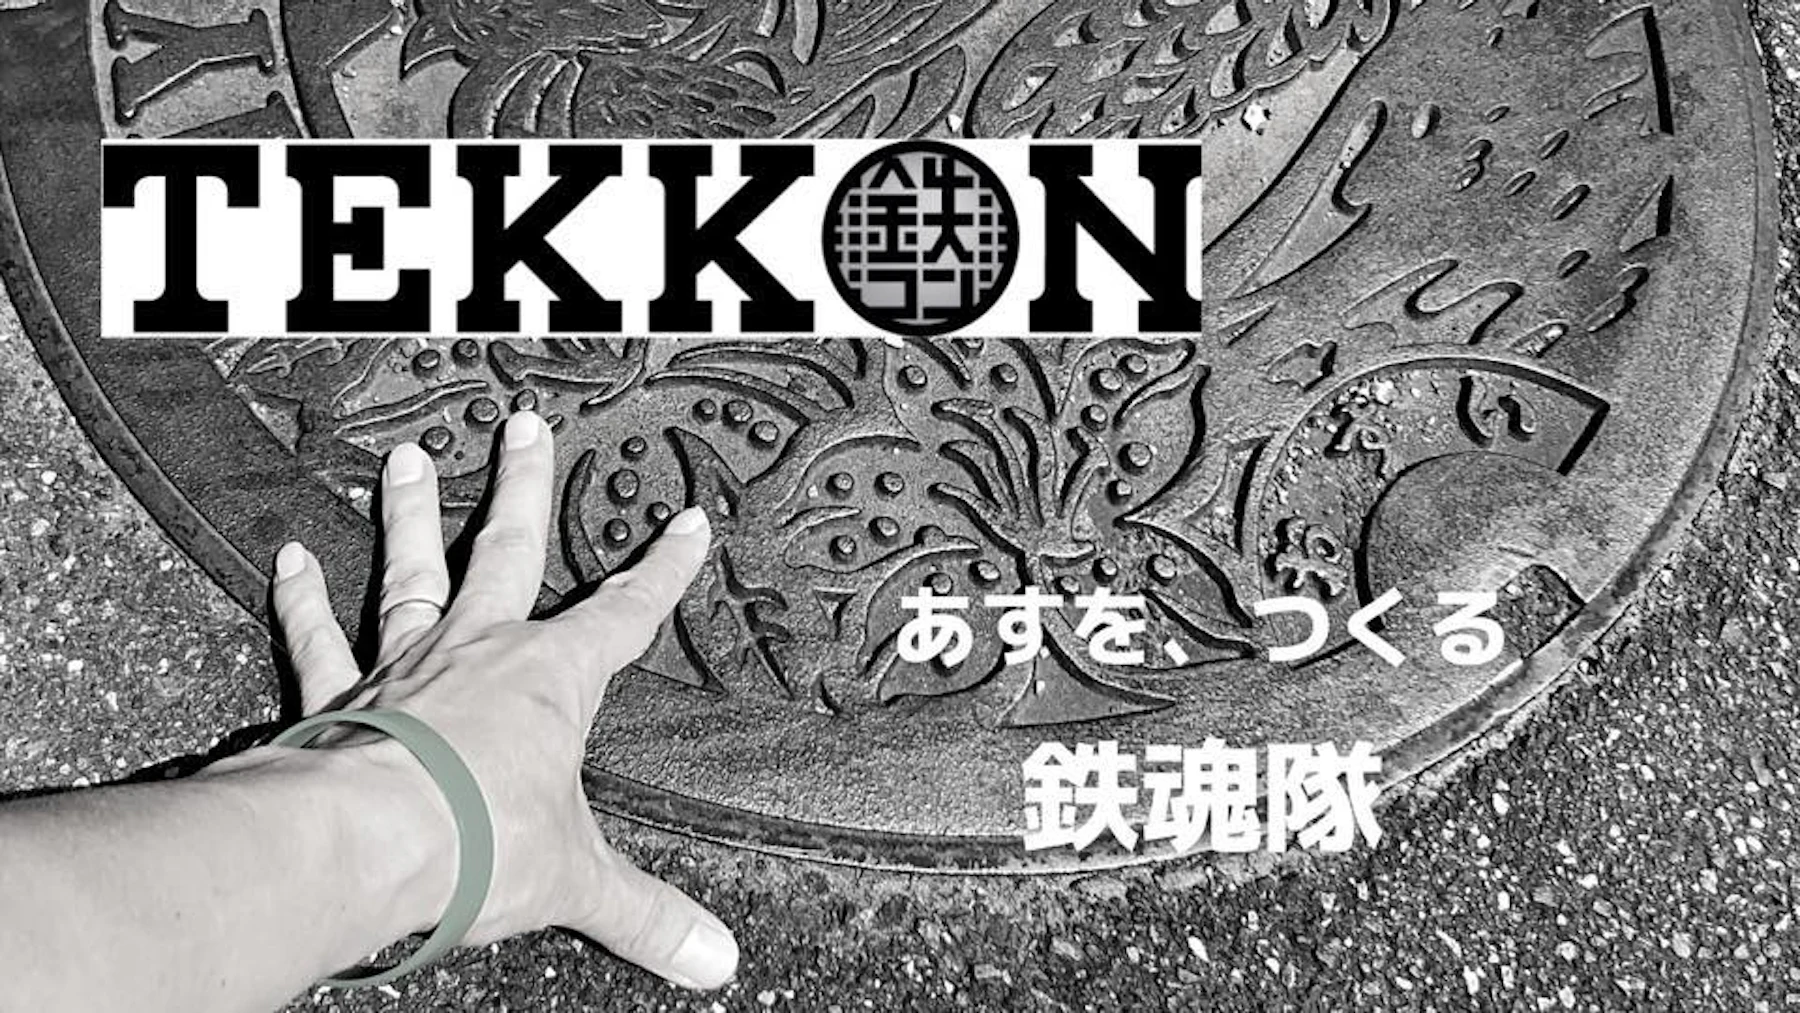 【2023年2月】TEKKON有志コミュニティ・鉄魂隊のイベントのお知らせ